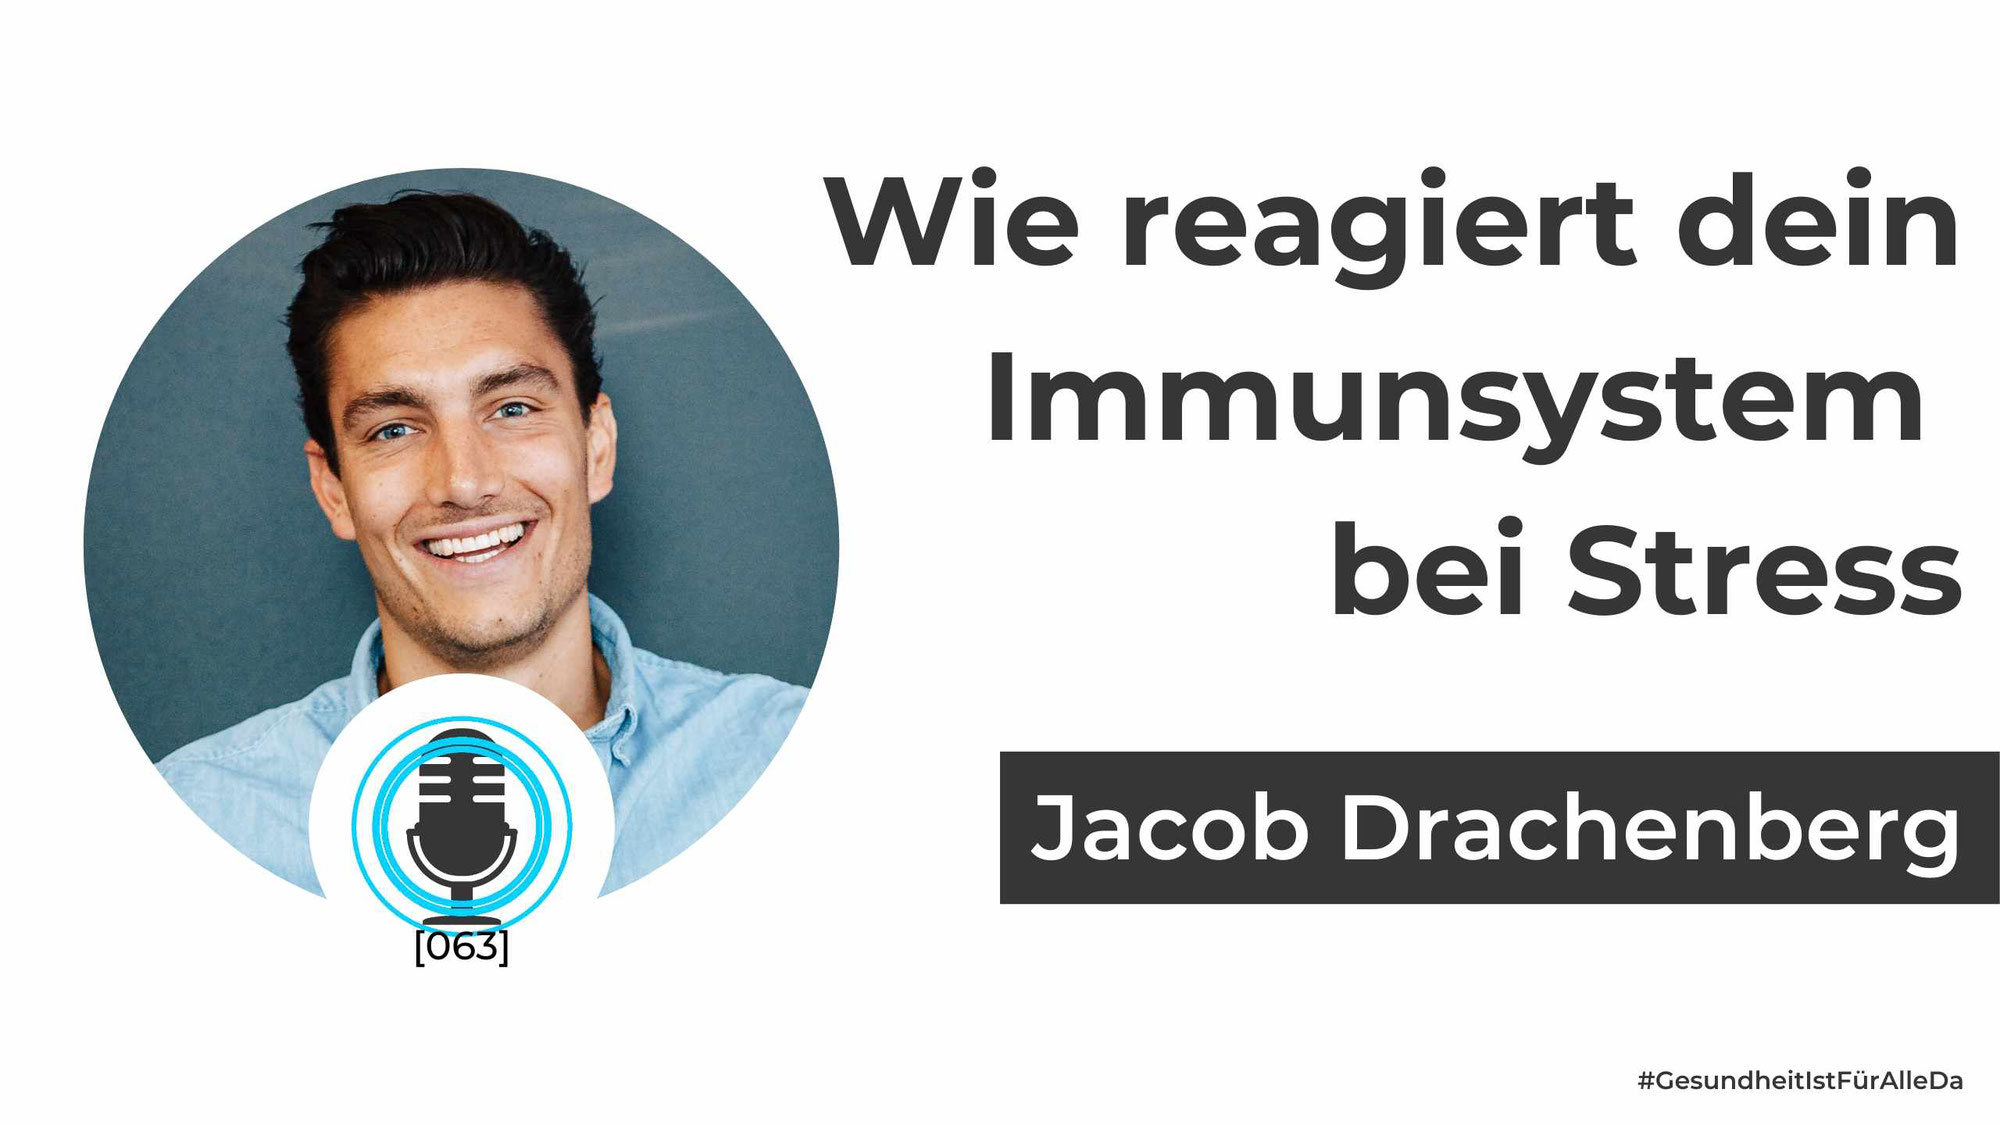 Jacob Drachenberg